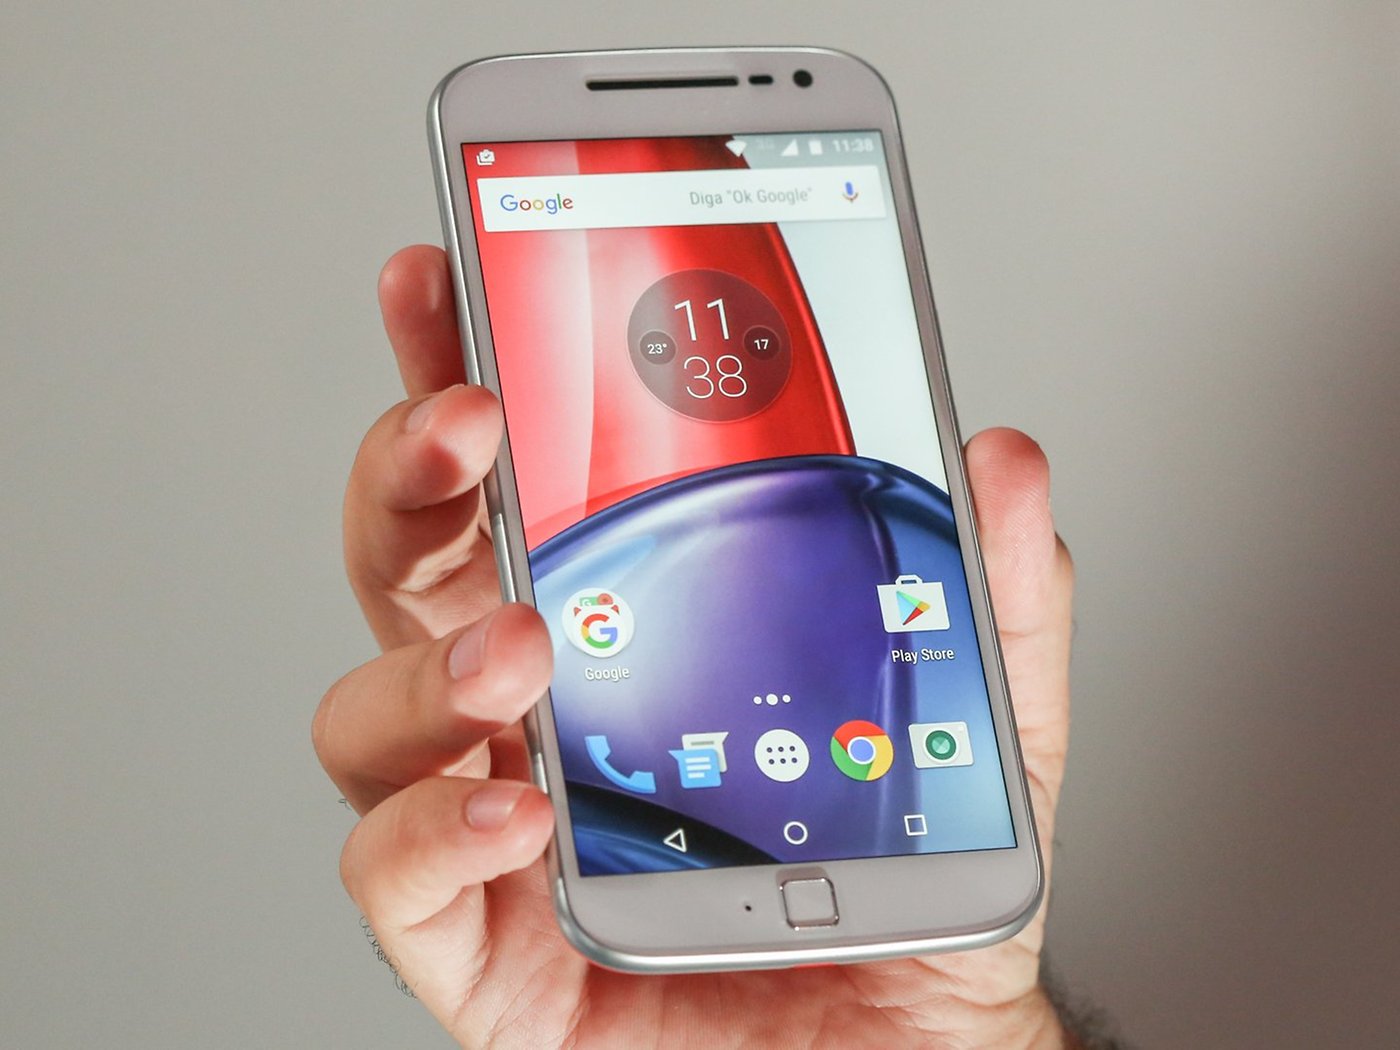 Tienda Tecno - Motorola Moto G4 Plus Usado Ojo👀 Sin huella a tan